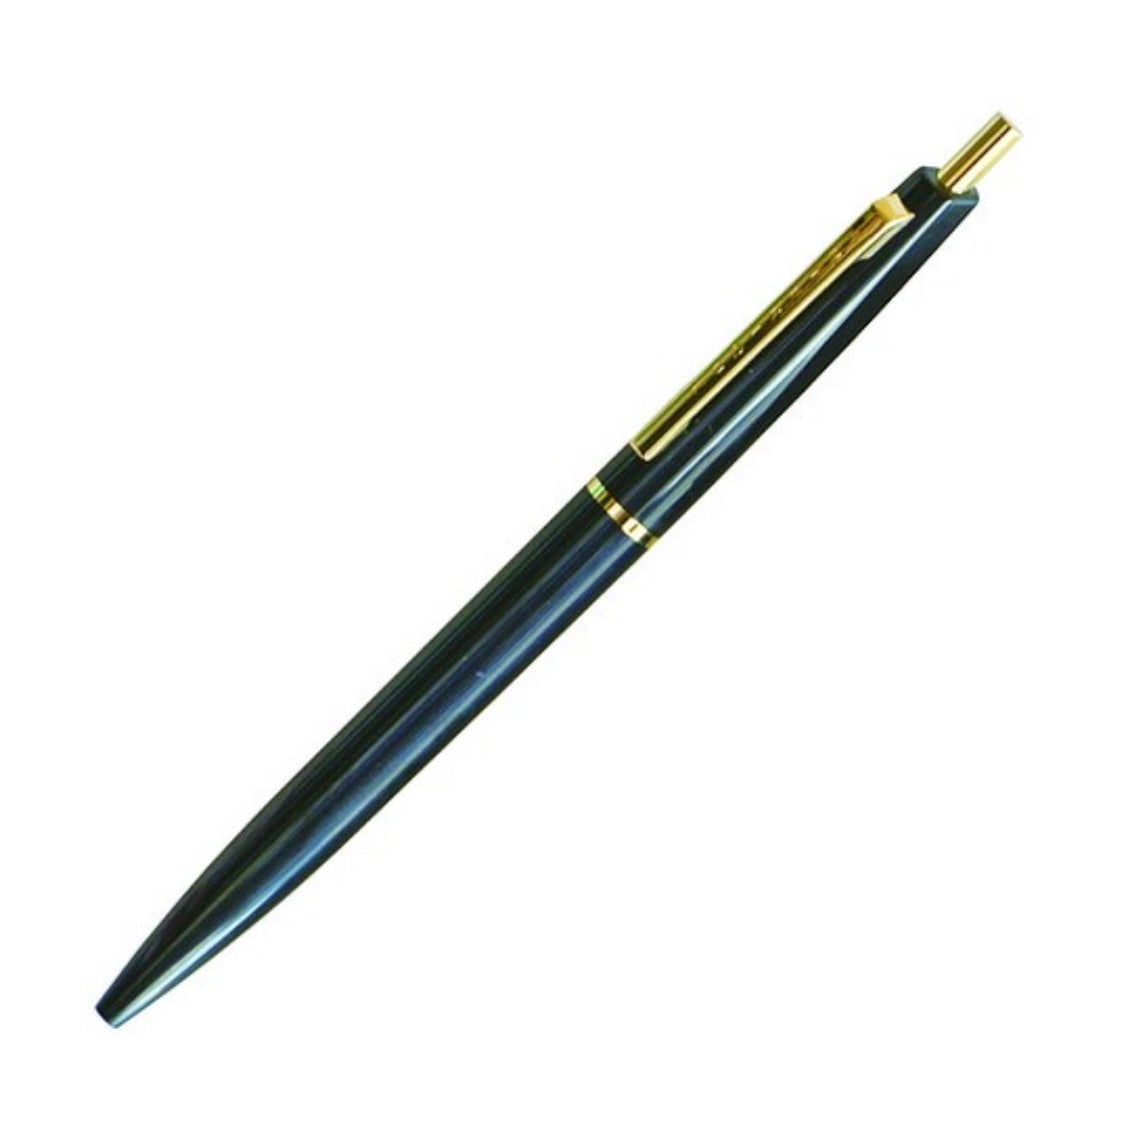 Anterique Mechanical Pencil - 0.5 mm - Pitch Black